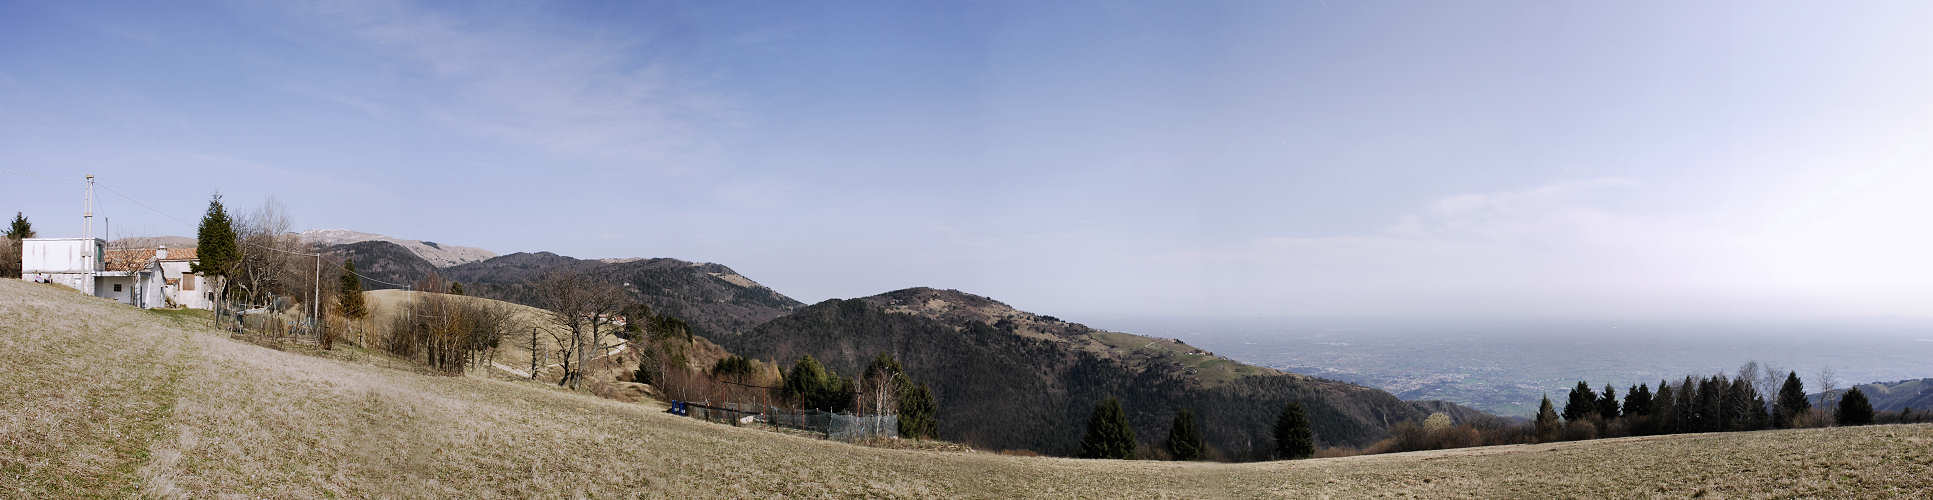 Col Campeggia, Campo Solagna Colli Alti, Monte Grappa - foto panoramica